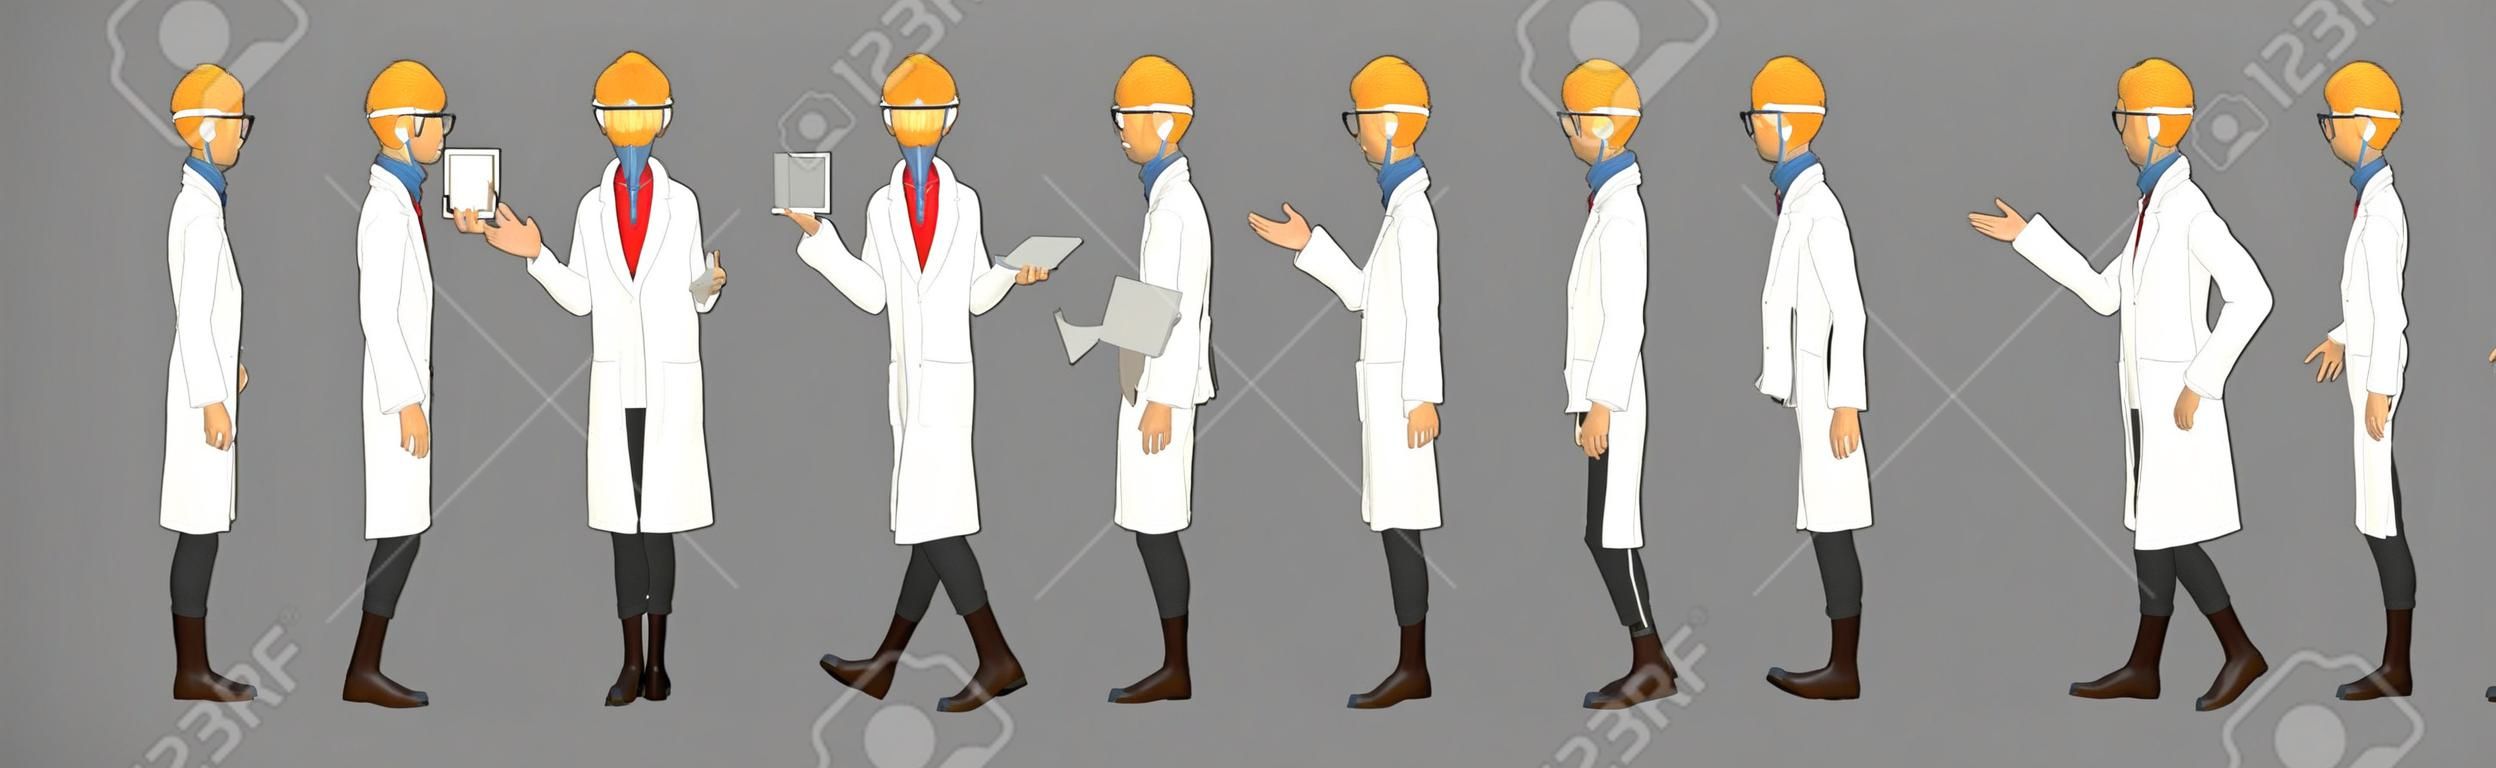 Wissenschaftler-Charaktermodellblatt mit Animationssequenz für den Laufzyklus